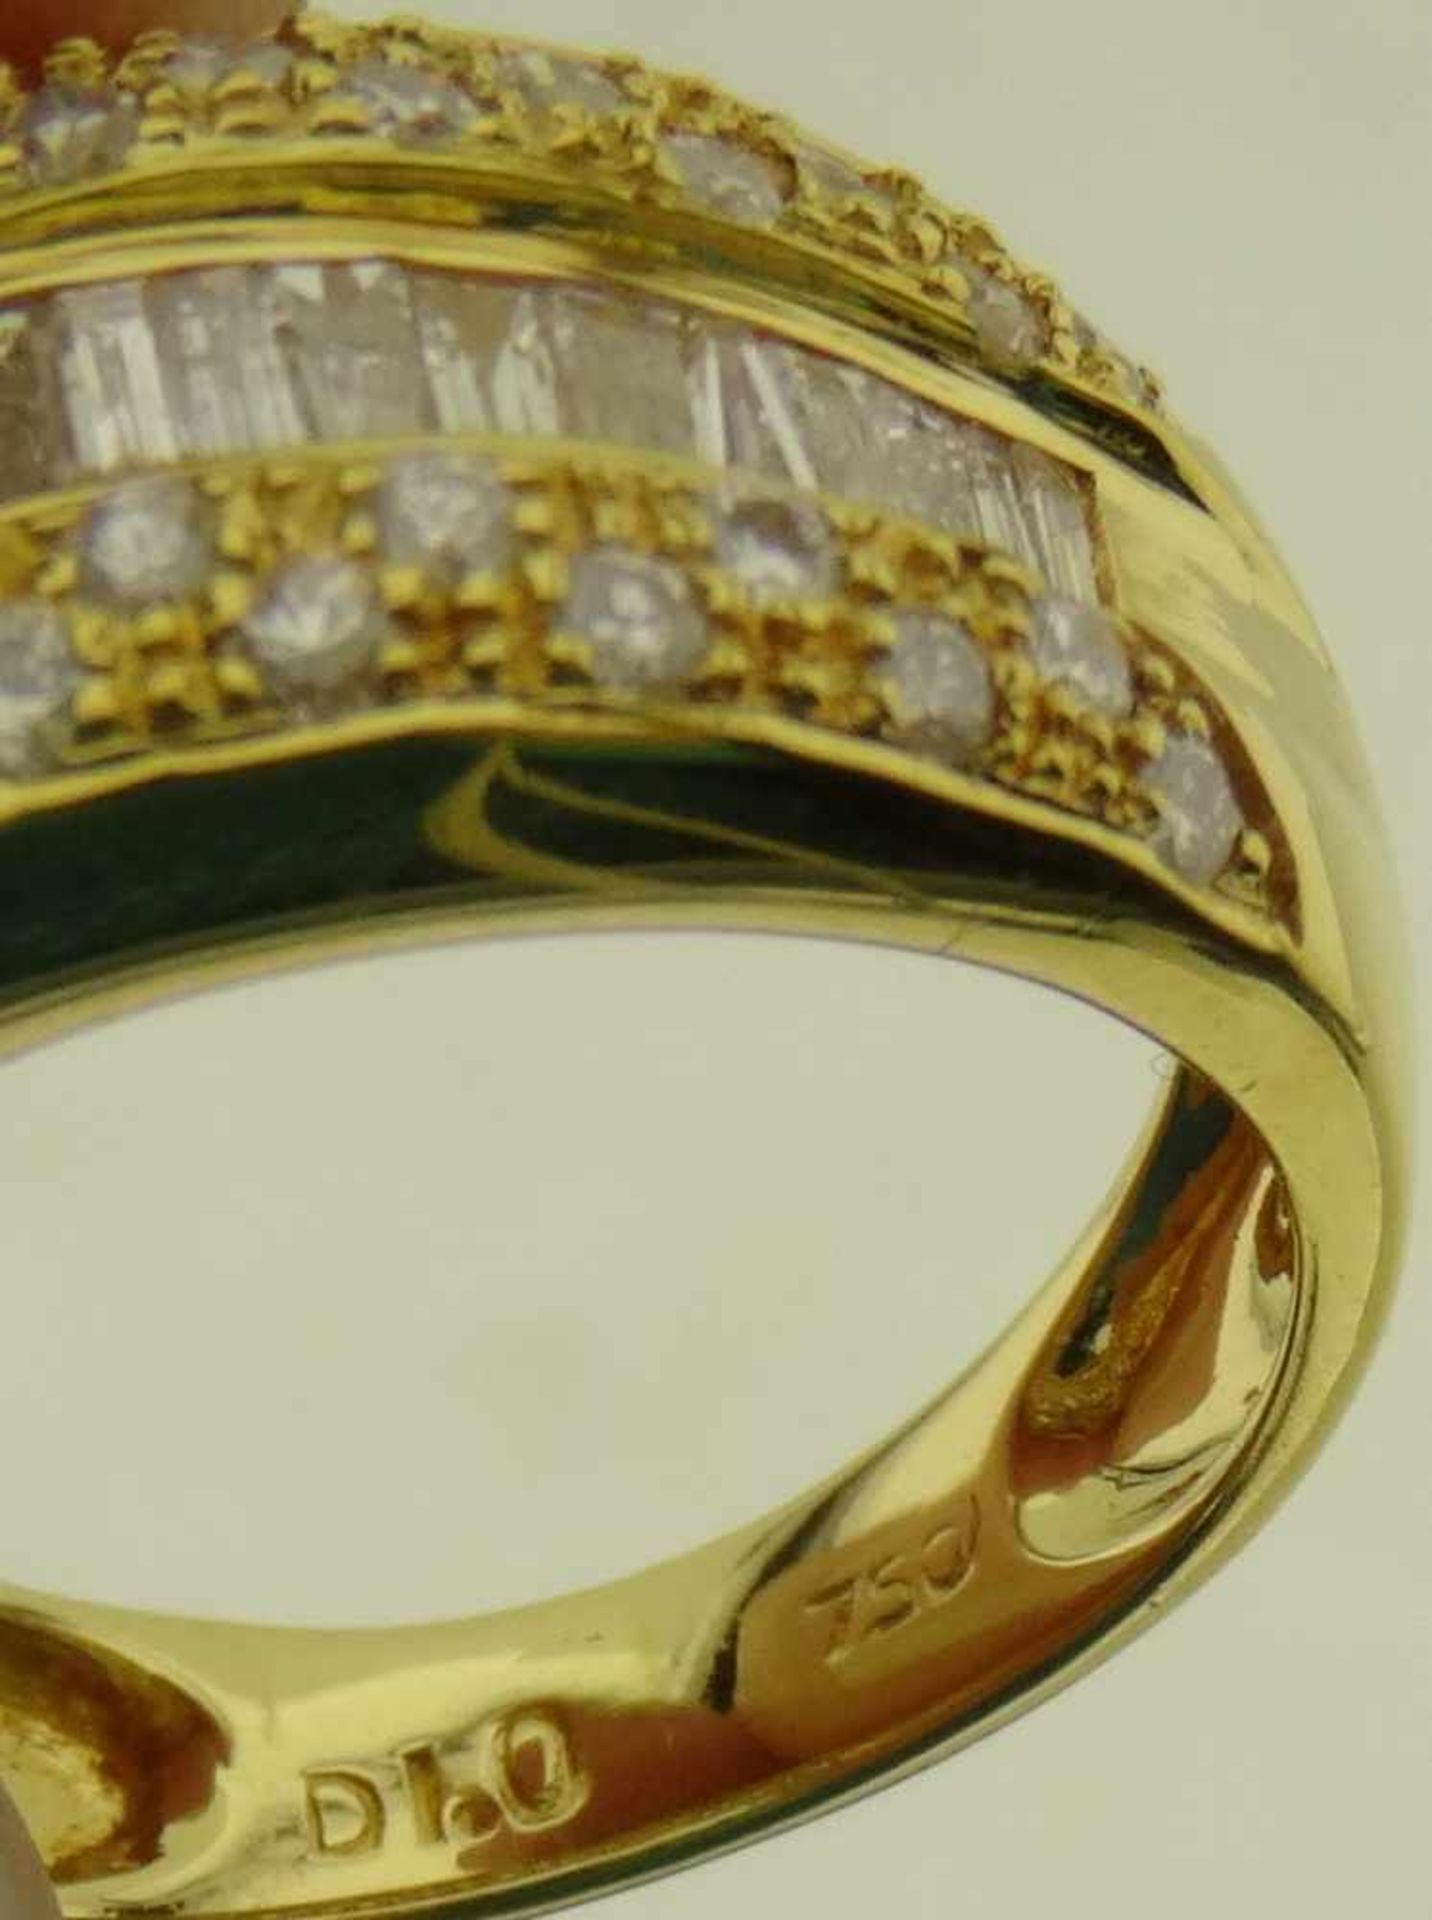 Damenring 750 Gold Brillant / Diamanten sehr schöner Brillant / Diamantring in 750 Gold 18k, - Bild 4 aus 4